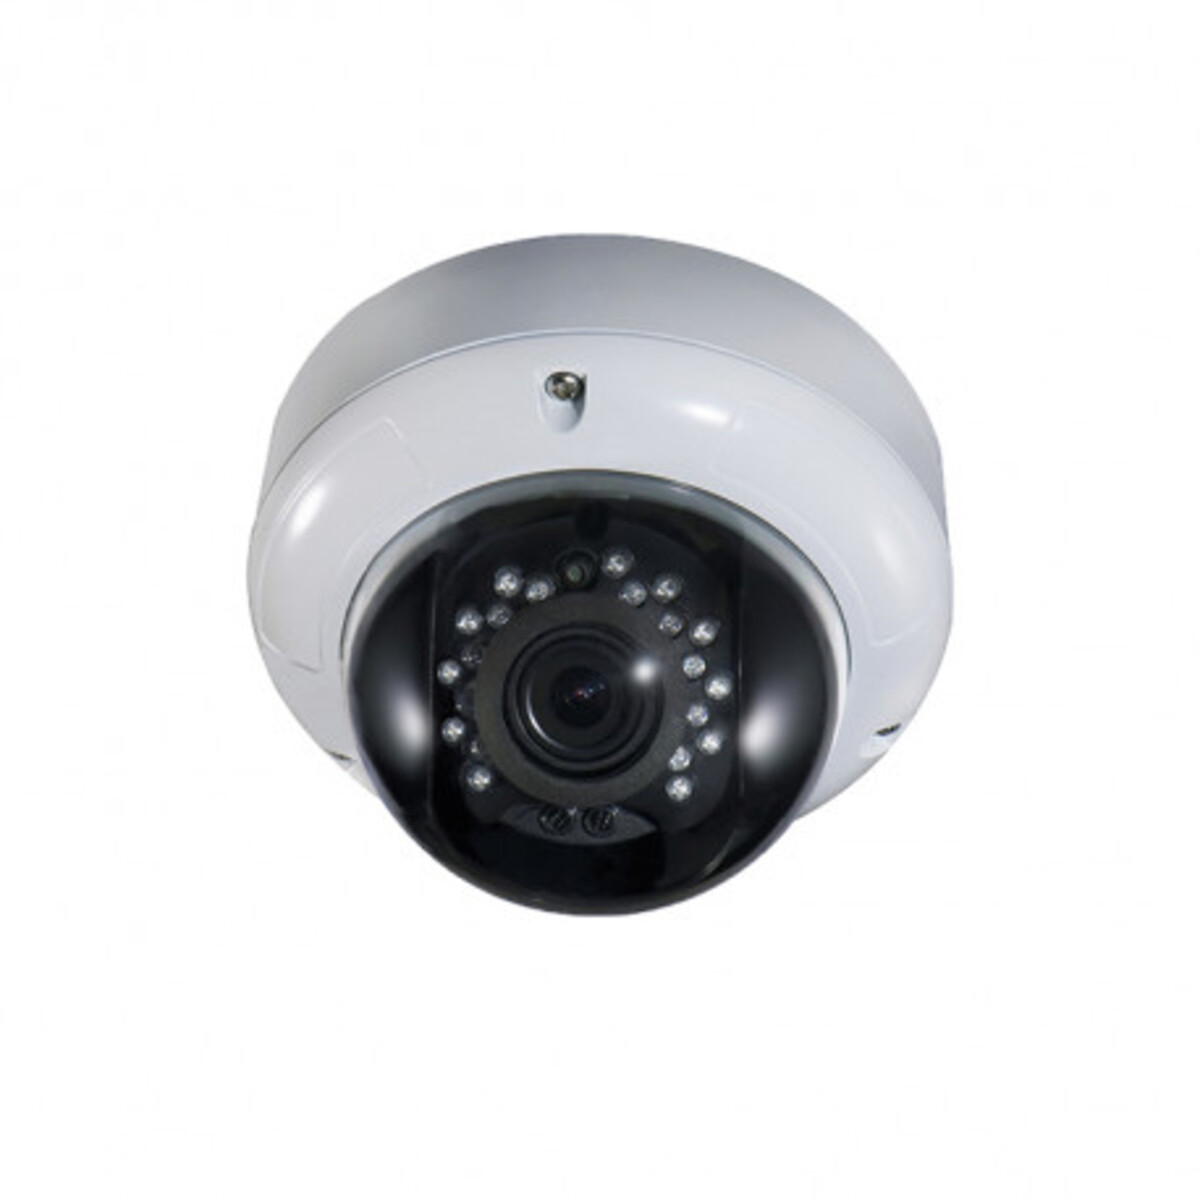 Caméra ahd vandaldôme 5mp de vidéosurveillance - optique 2.8-12 mm - ahcam634vza - comelit